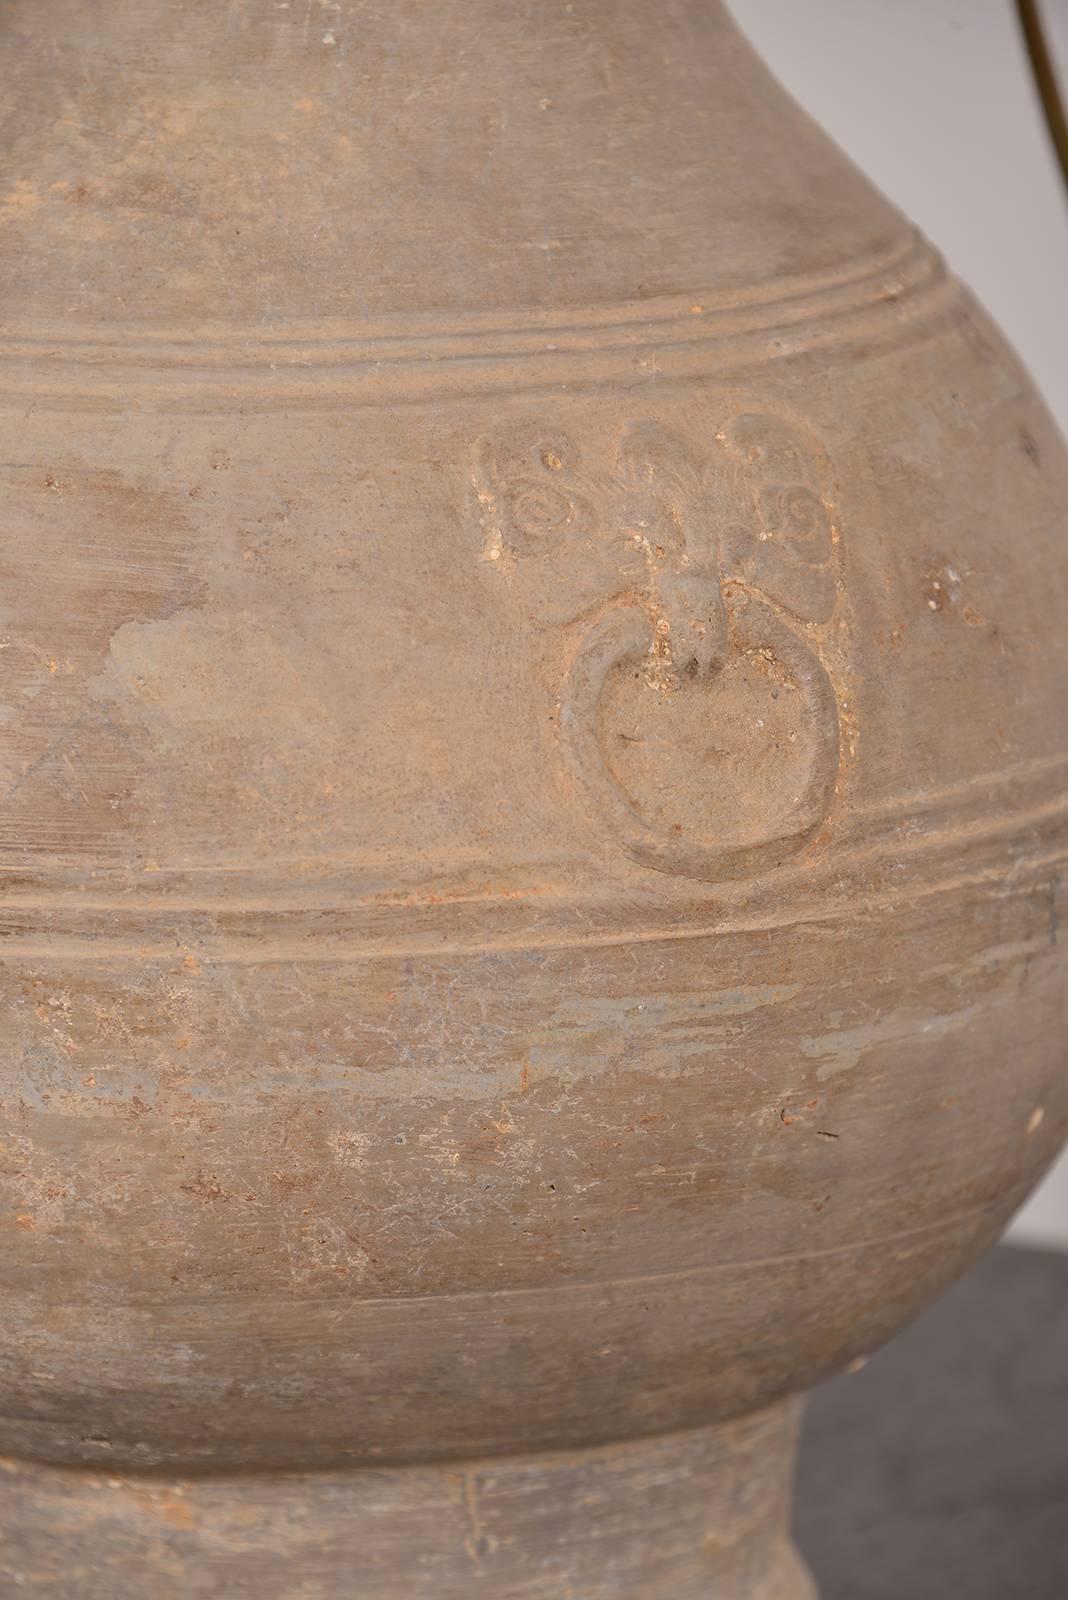 A Chinese Han dynasty unglazed terracotta jar, 